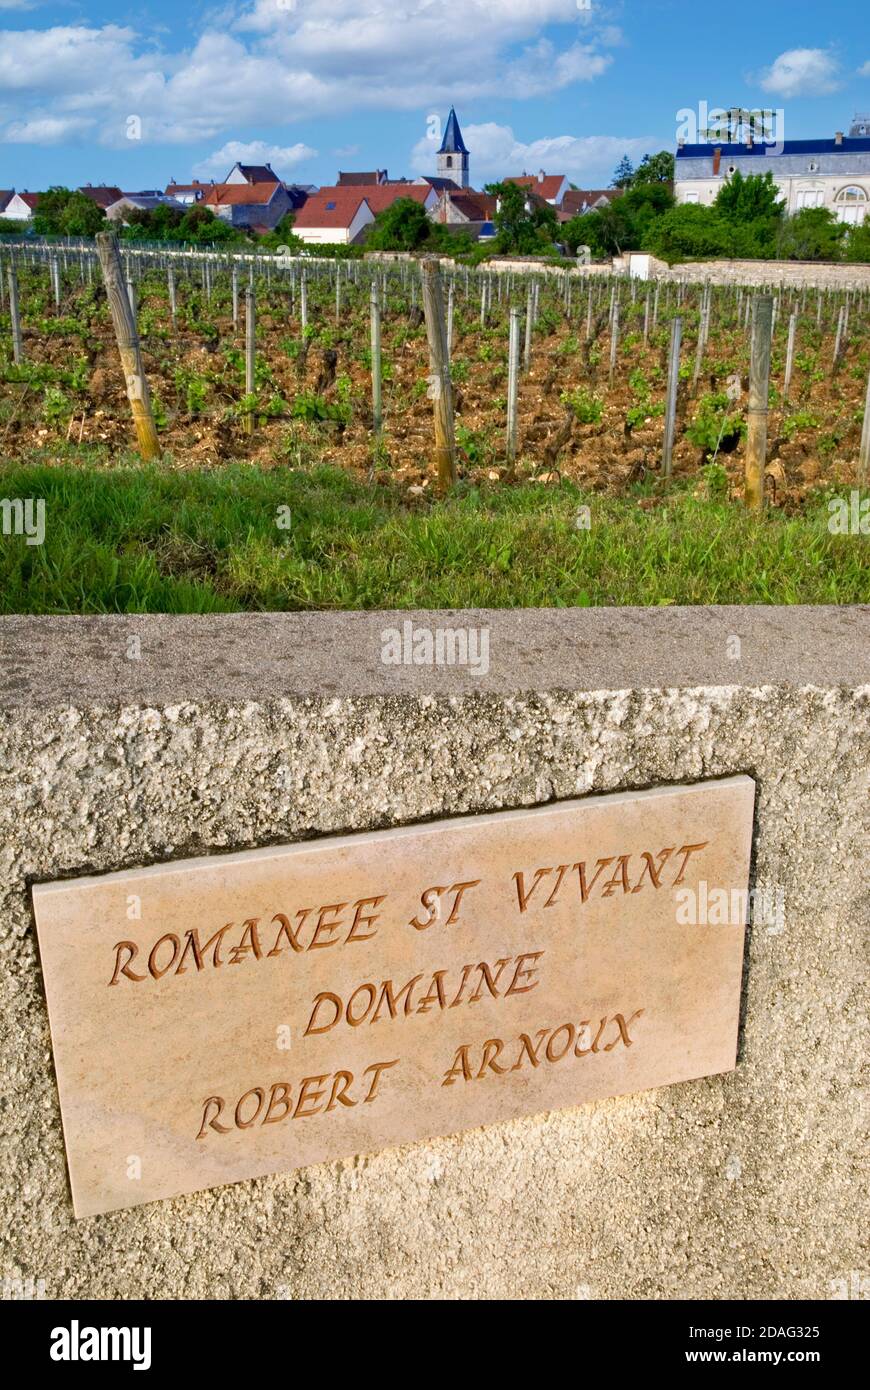 Plaque de pierre de vignoble Romanee St vivant sur le mur du domaine Robert Arnoux avec village de Vosne-Romanee en arrière-plan Côte d'Or Bourgogne France Banque D'Images